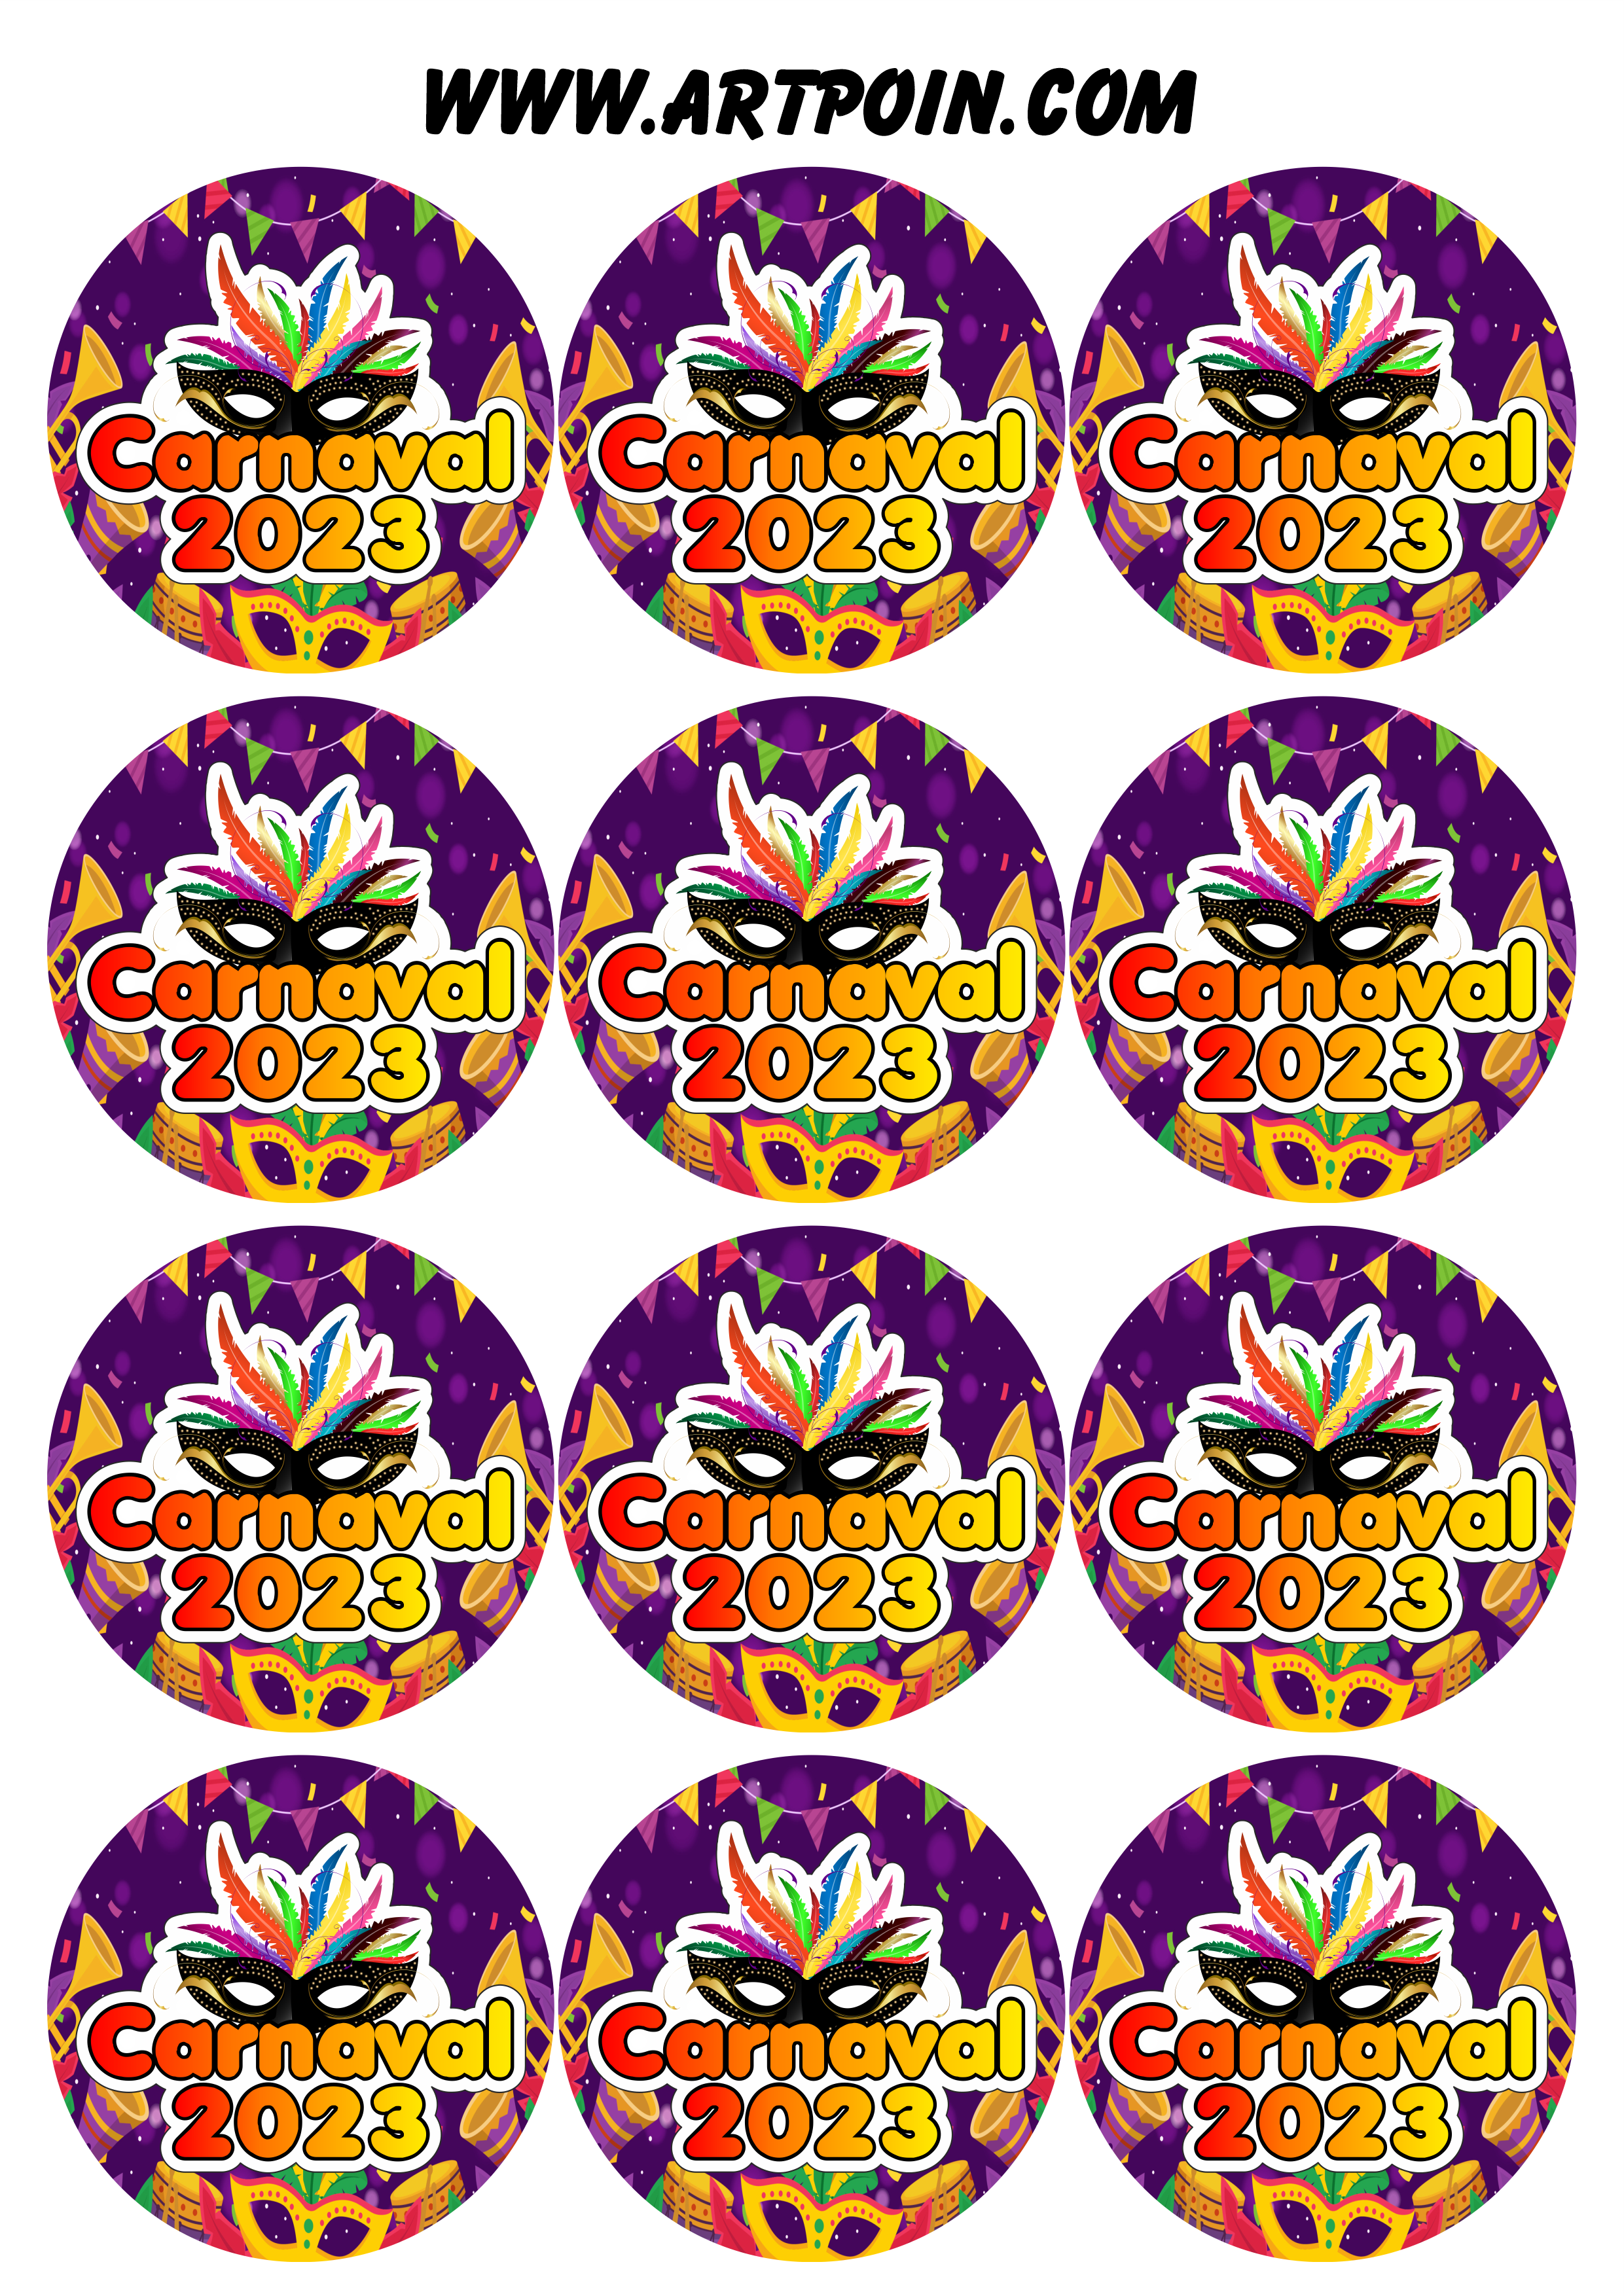 Carnaval 2023 adesivos stickers redondos pronto para imprimir e decorar 12 imagens png